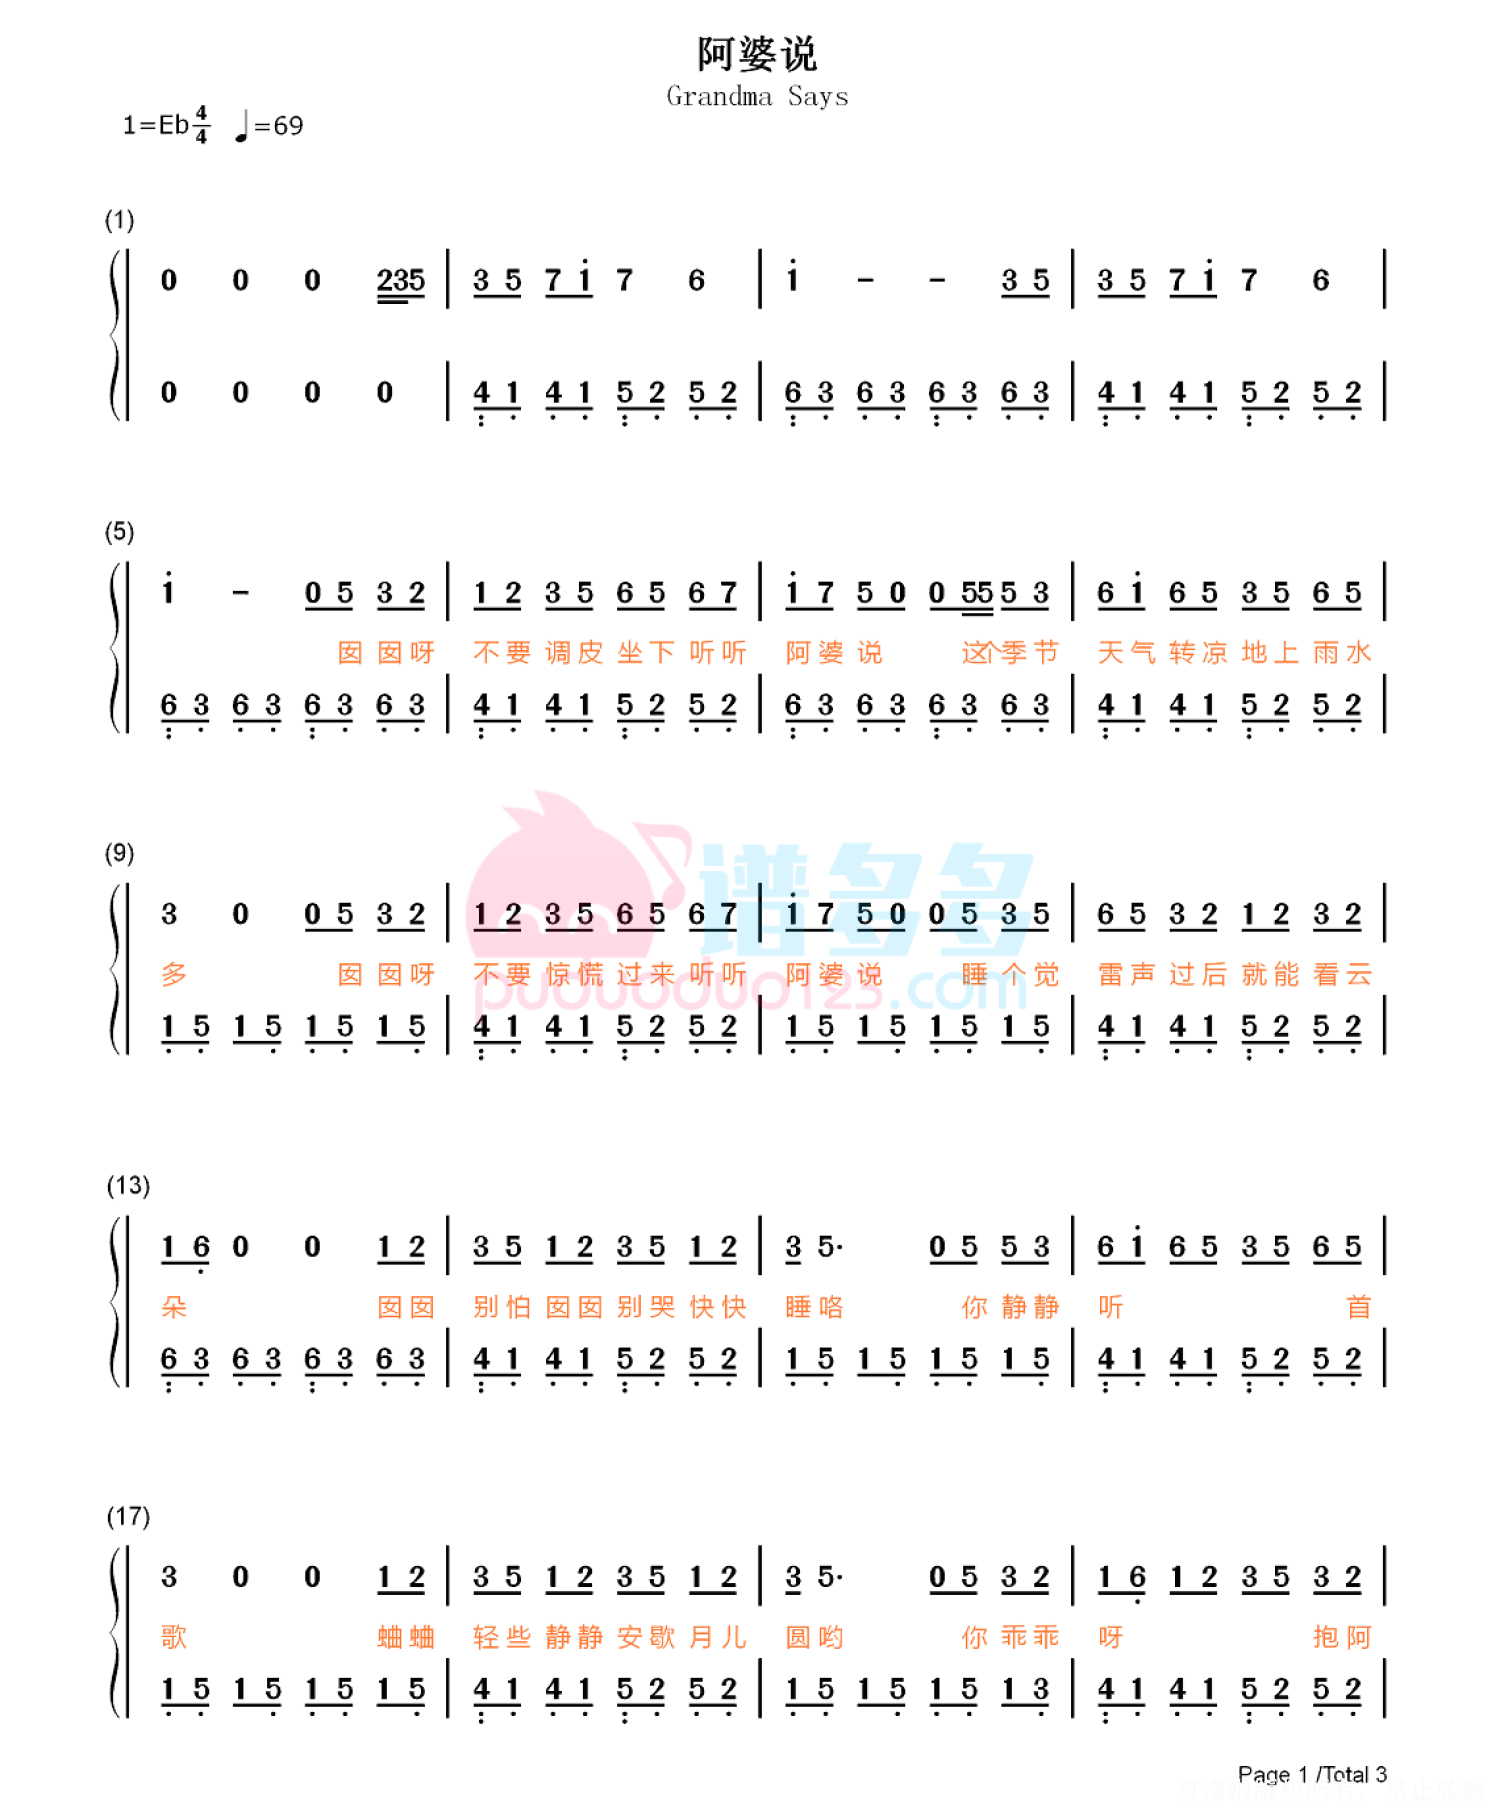 钢琴谱《阿婆说》用简单数字版制谱 - 白痴弹法 - 单手双手钢琴谱 - 钢琴简谱